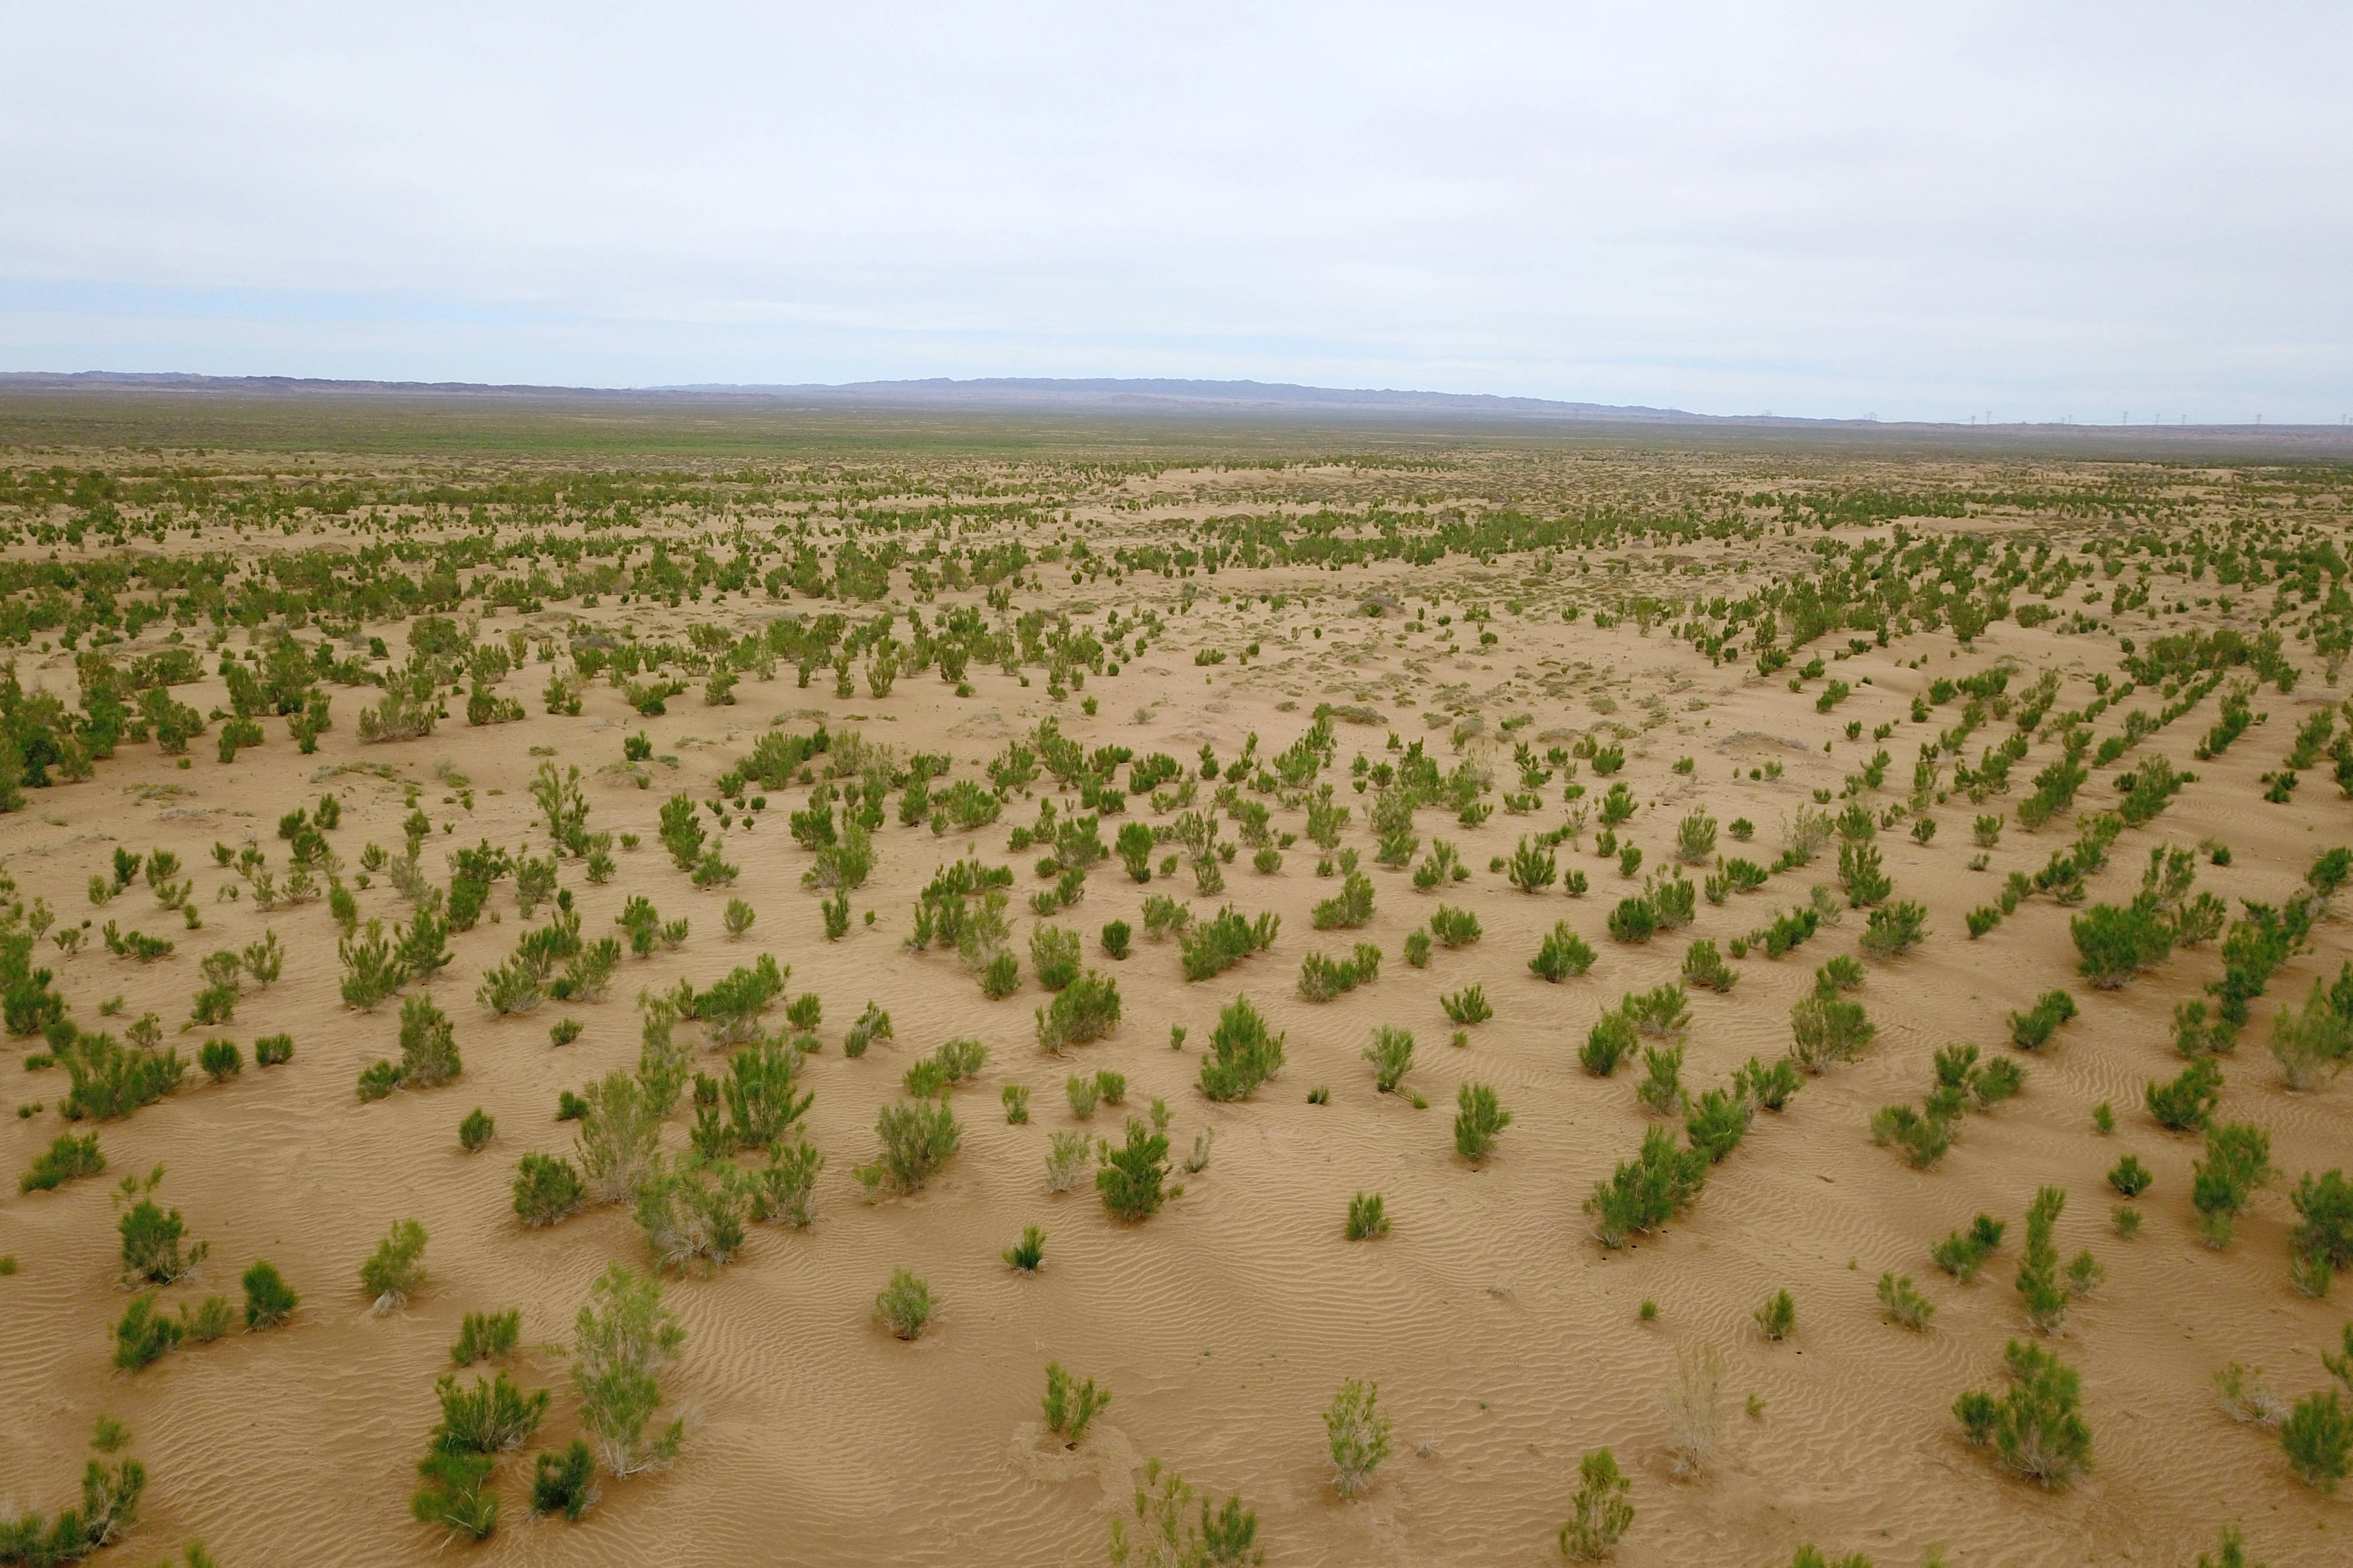 这是6月16日拍摄的临泽县北部干旱荒漠沙化土地封禁保护区(无人机照片